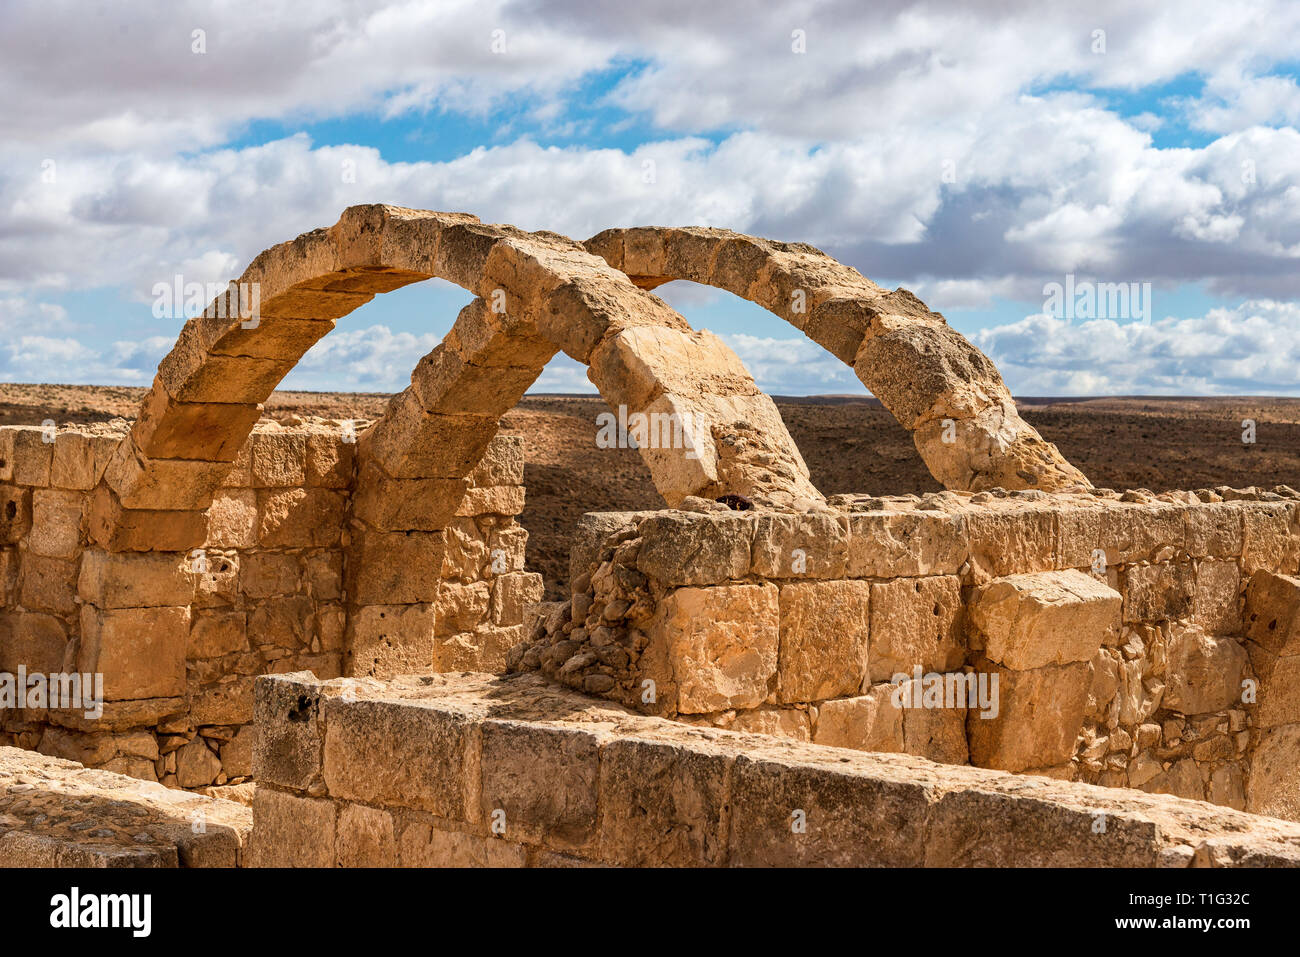 AVDAT, Israel/Feb 19, 2018: Die Ruinen dieser christlichen Nabatäischen Stadt in der israelischen Wüste Negev, verlassen, nach dem 7. Jahrhundert muslimischen Eroberung. Stockfoto